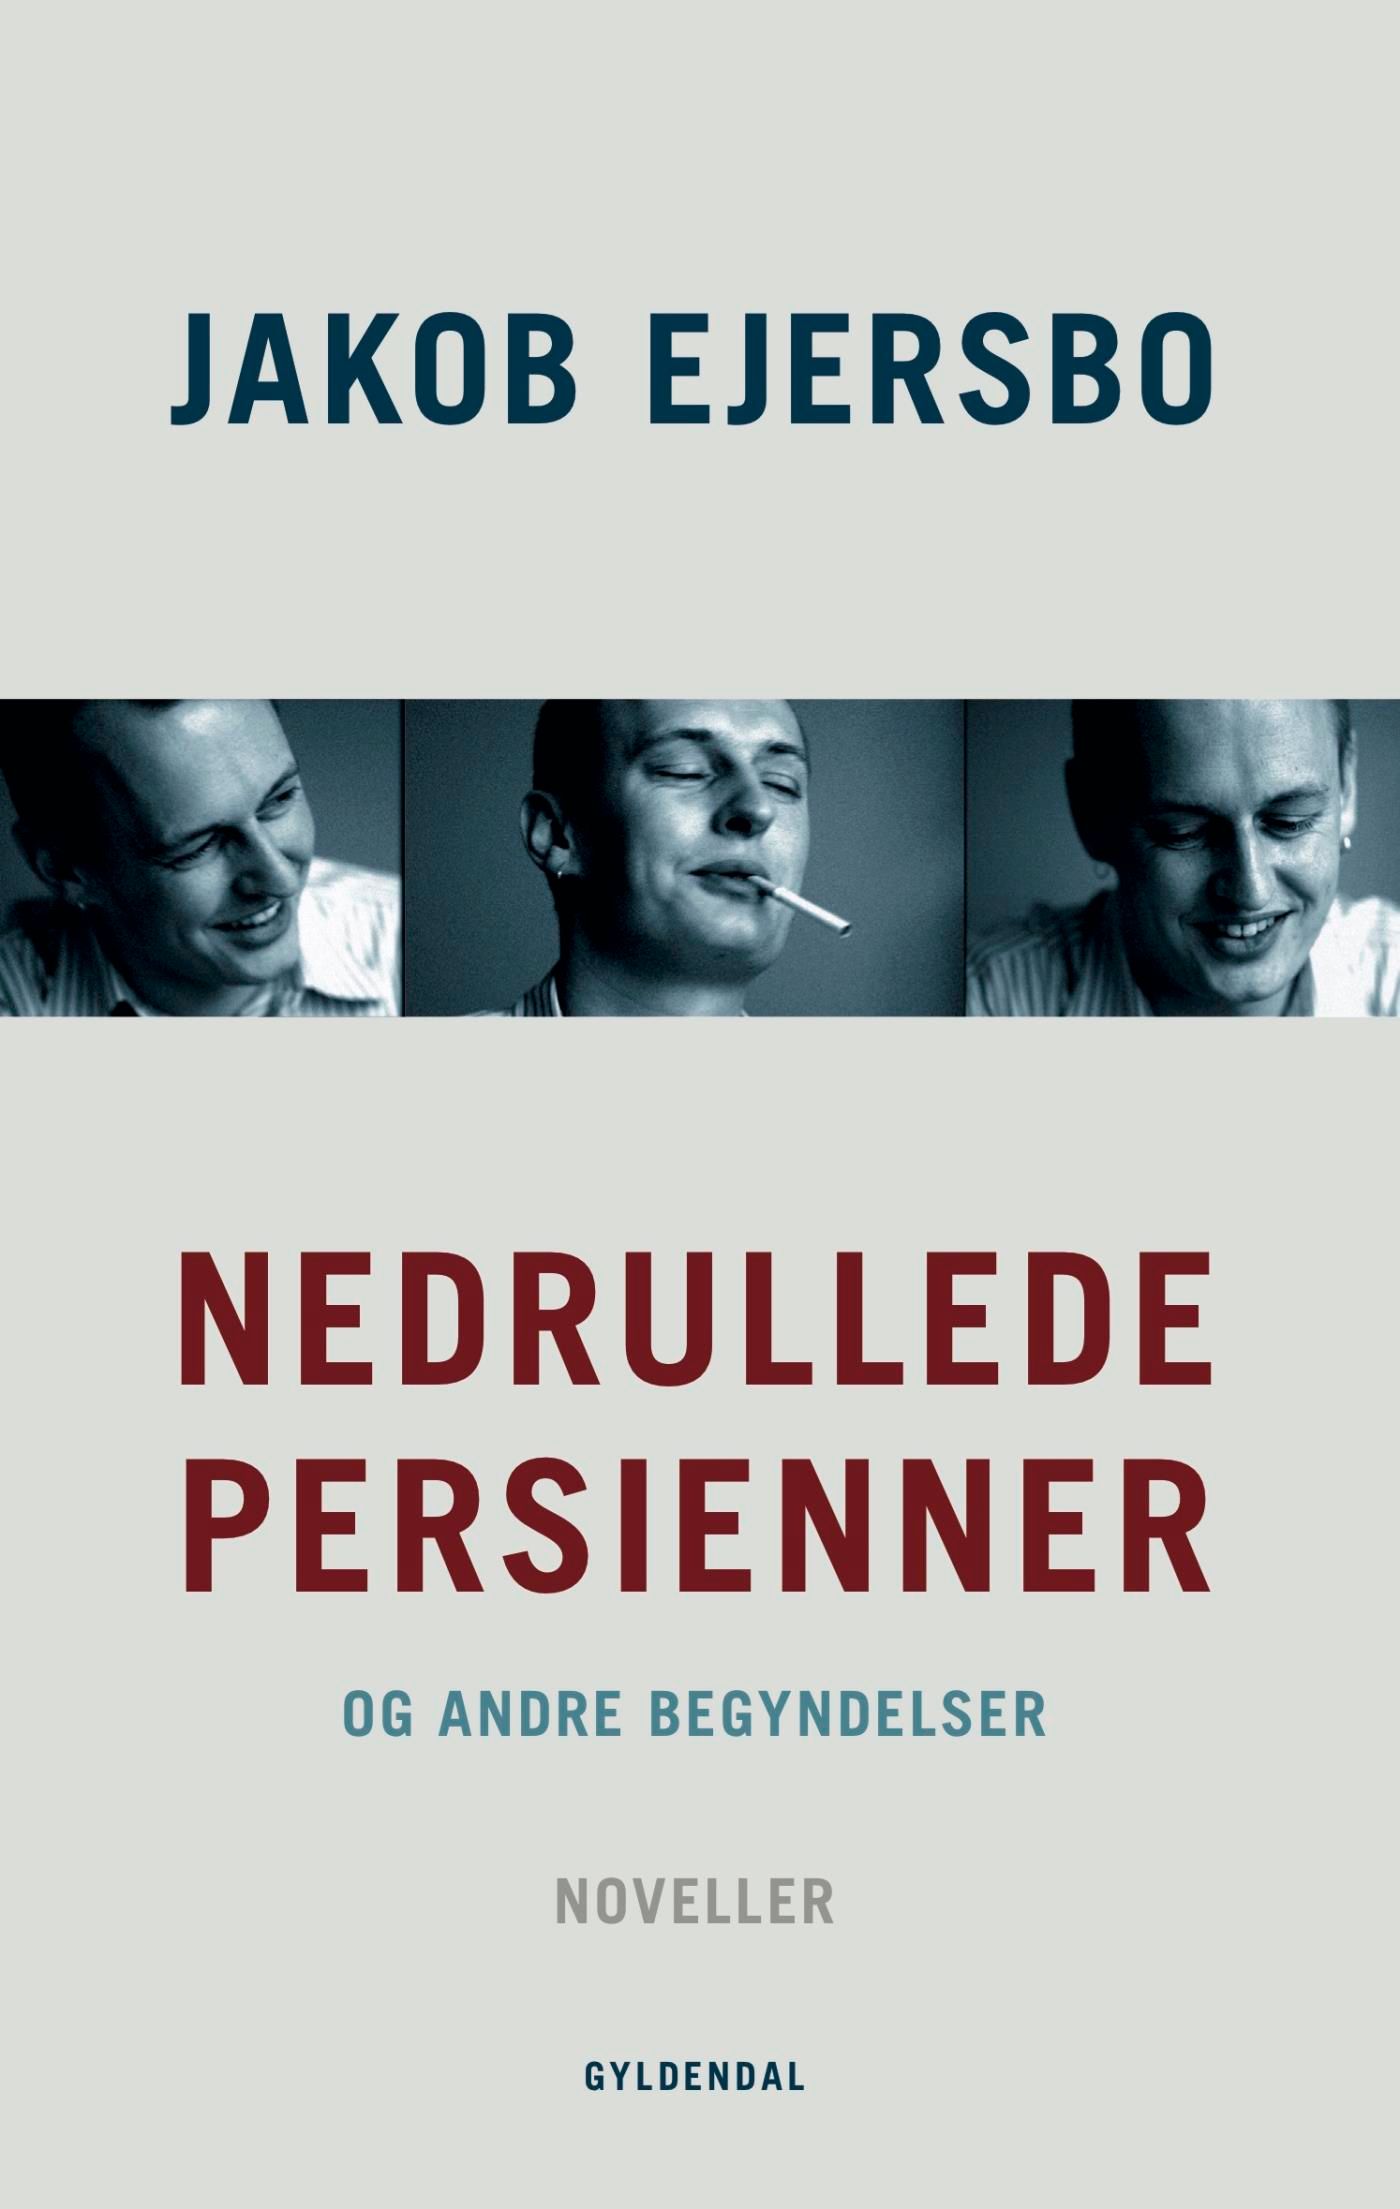 Nedrullede persienner, eBook by Jakob Ejersbo